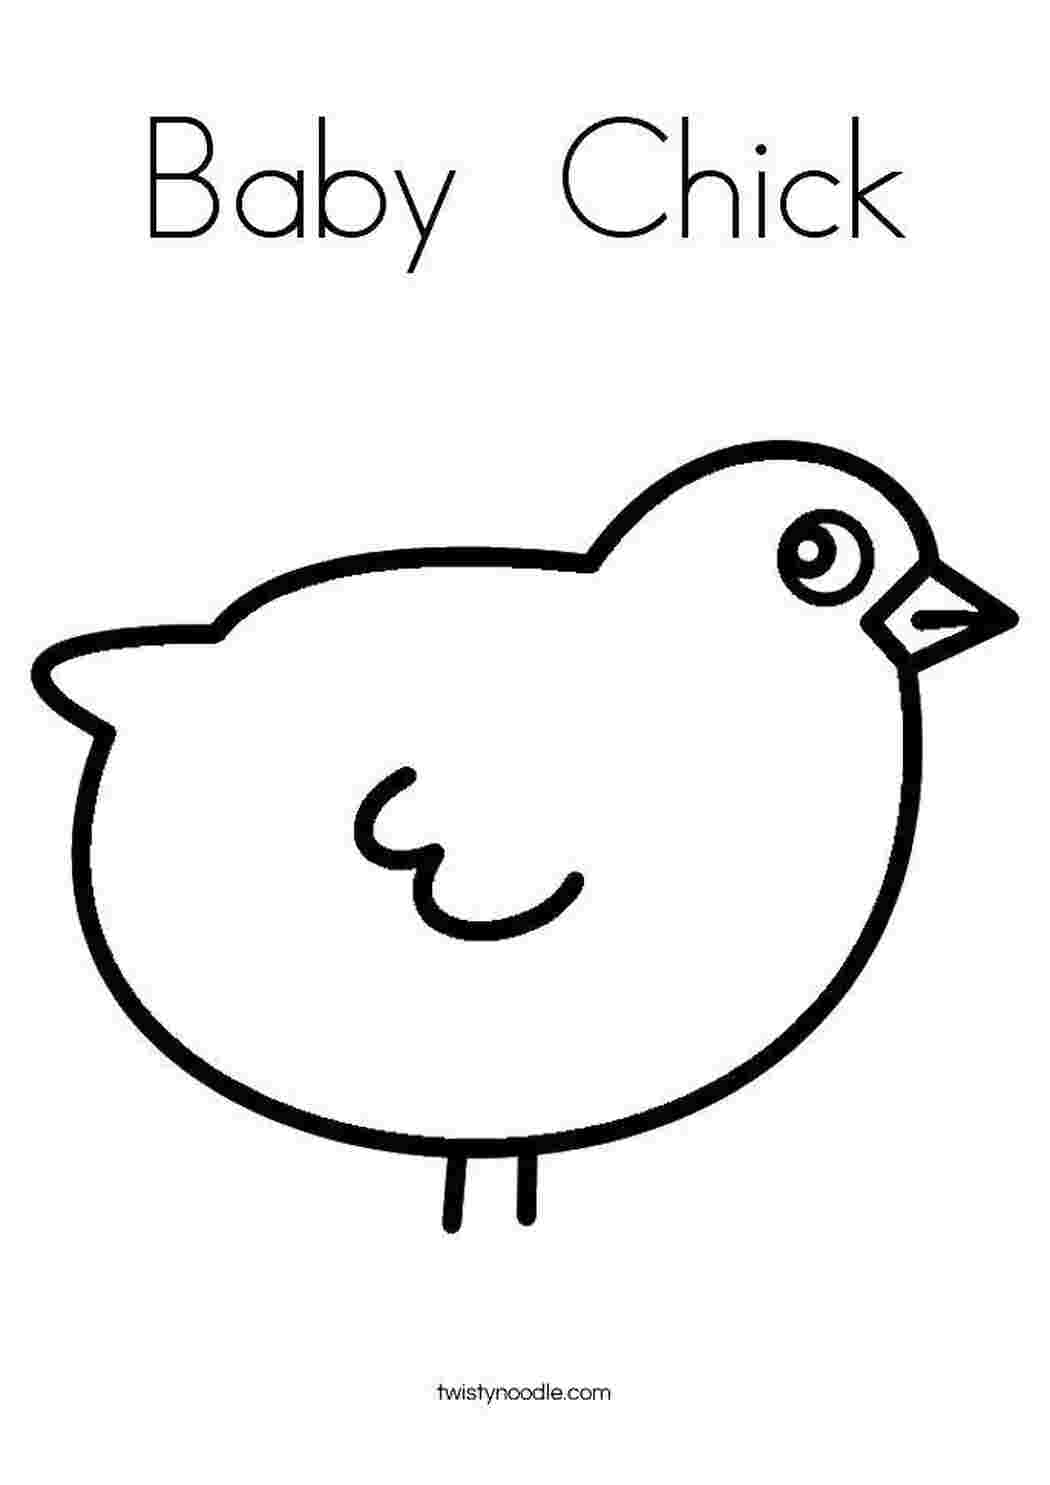 A small chick нарисовать